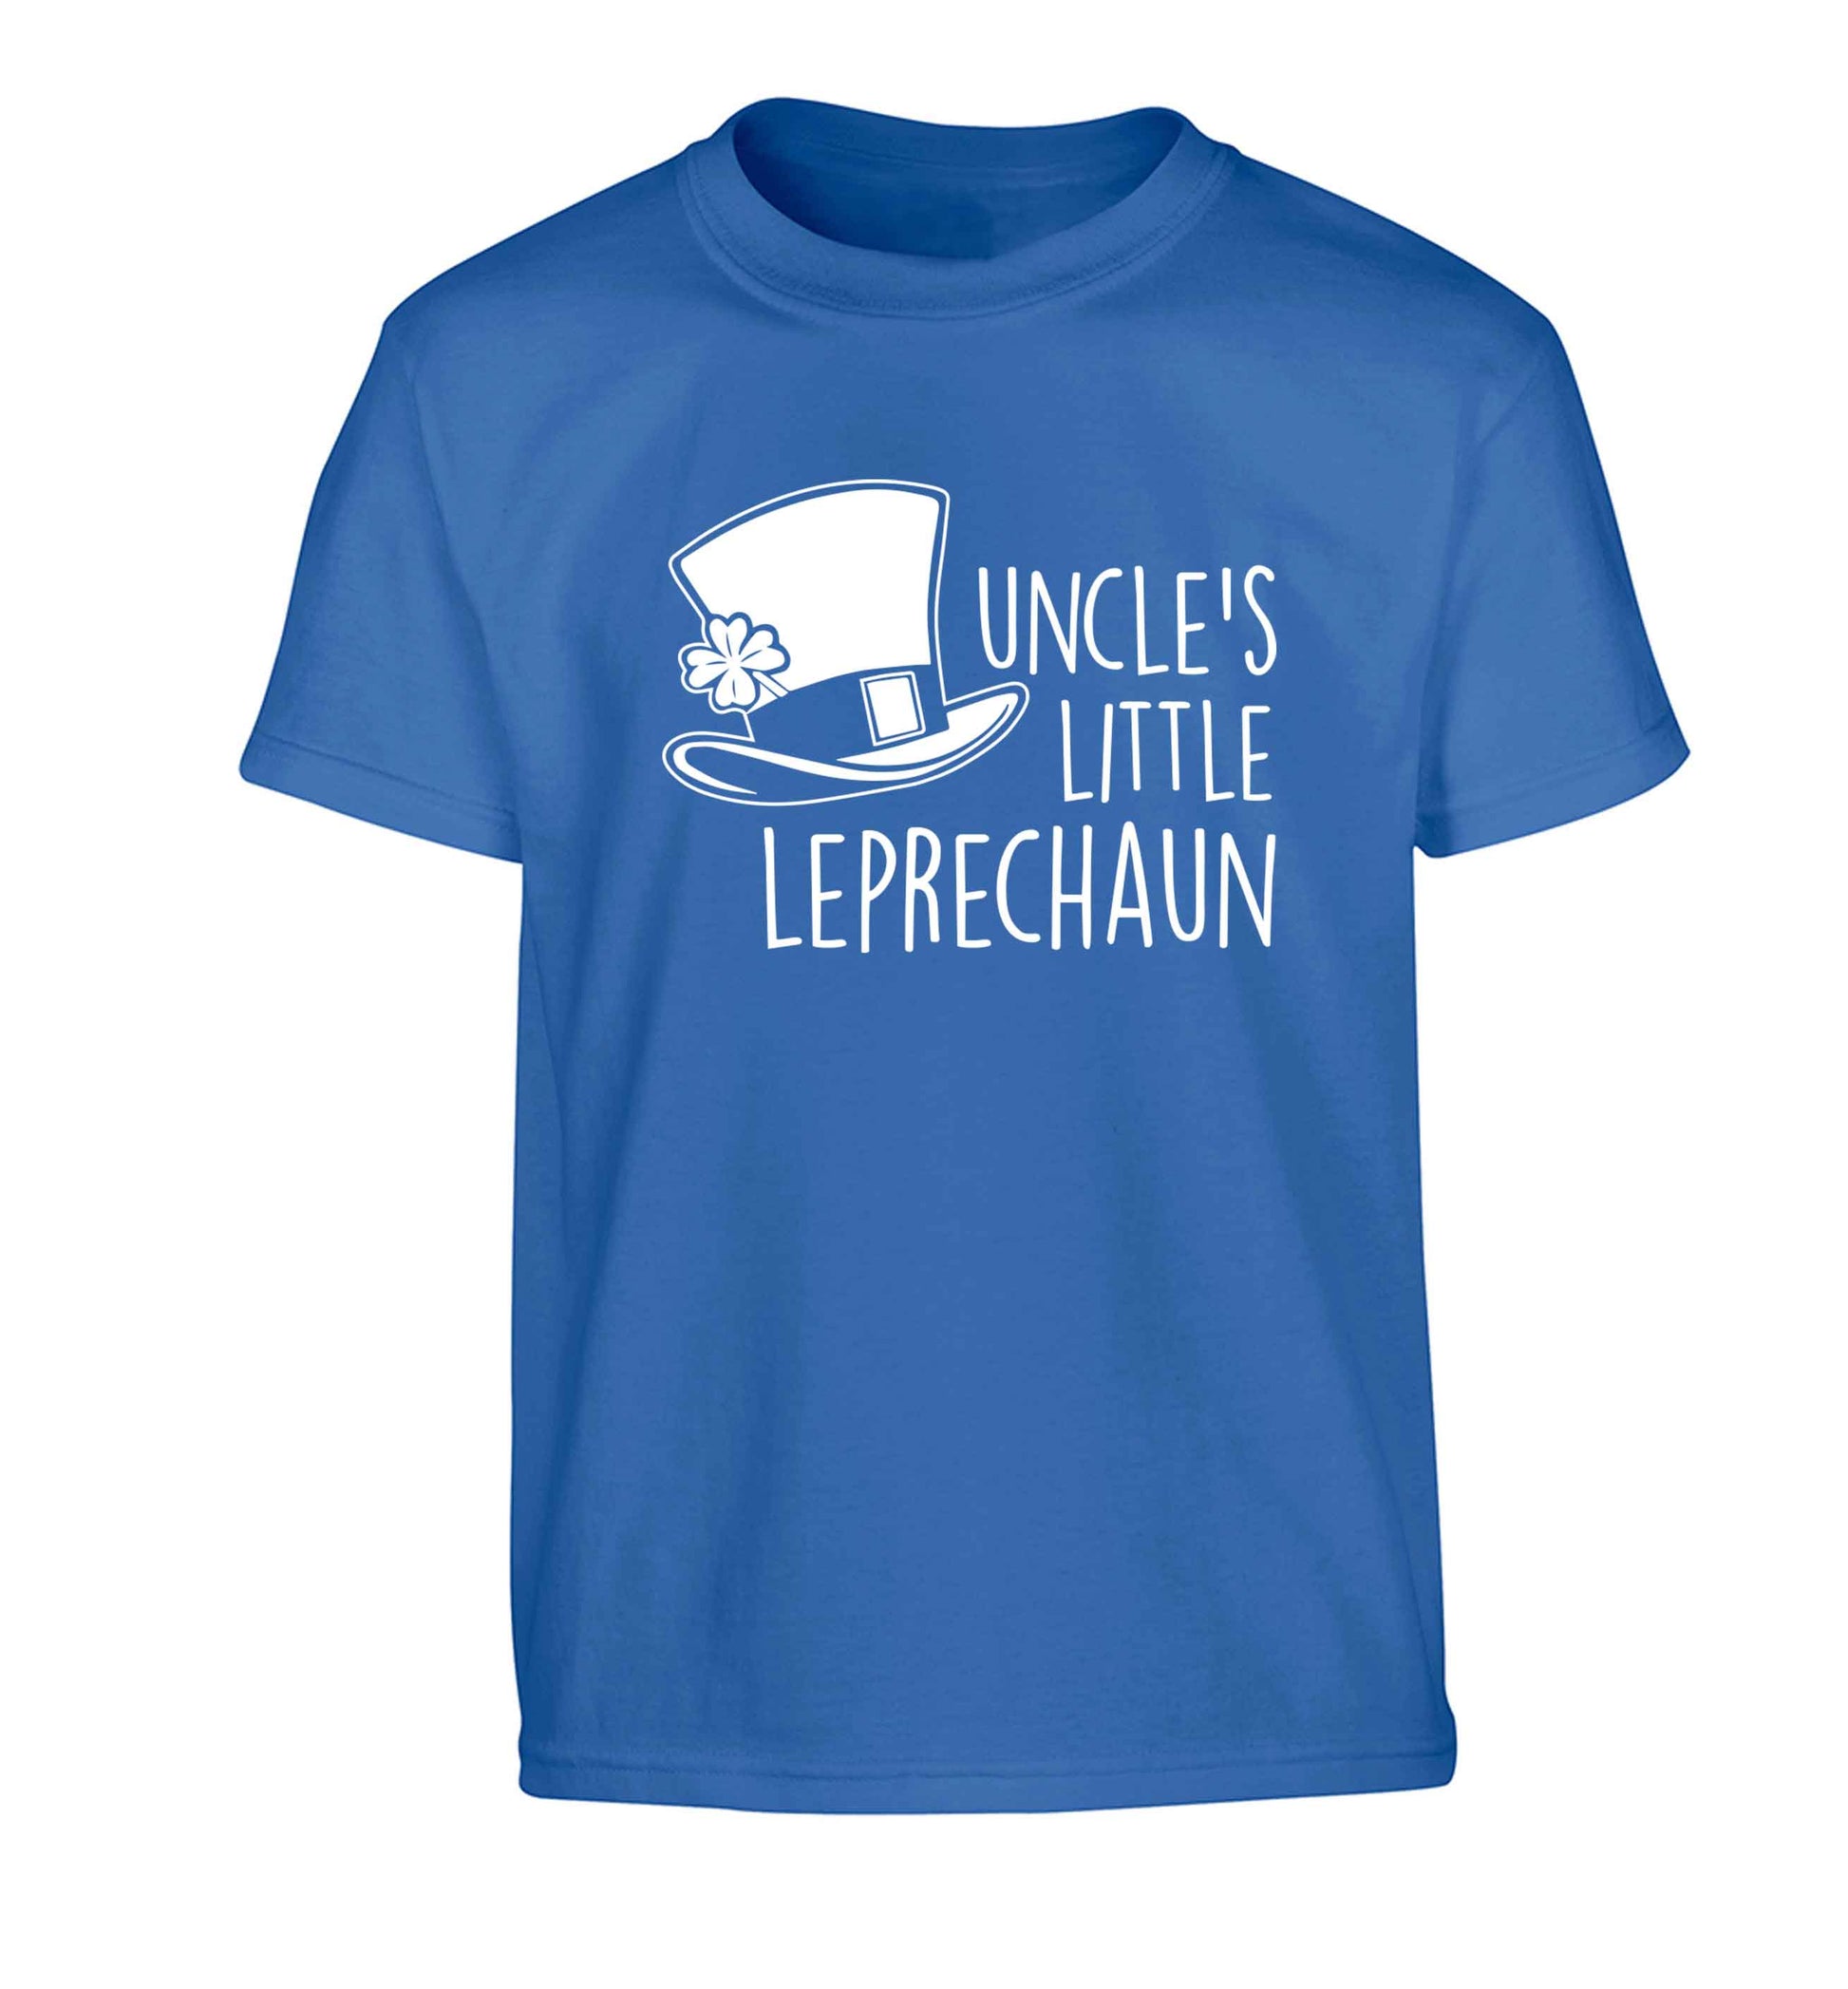 Uncles little leprechaun Children's blue Tshirt 12-13 Years